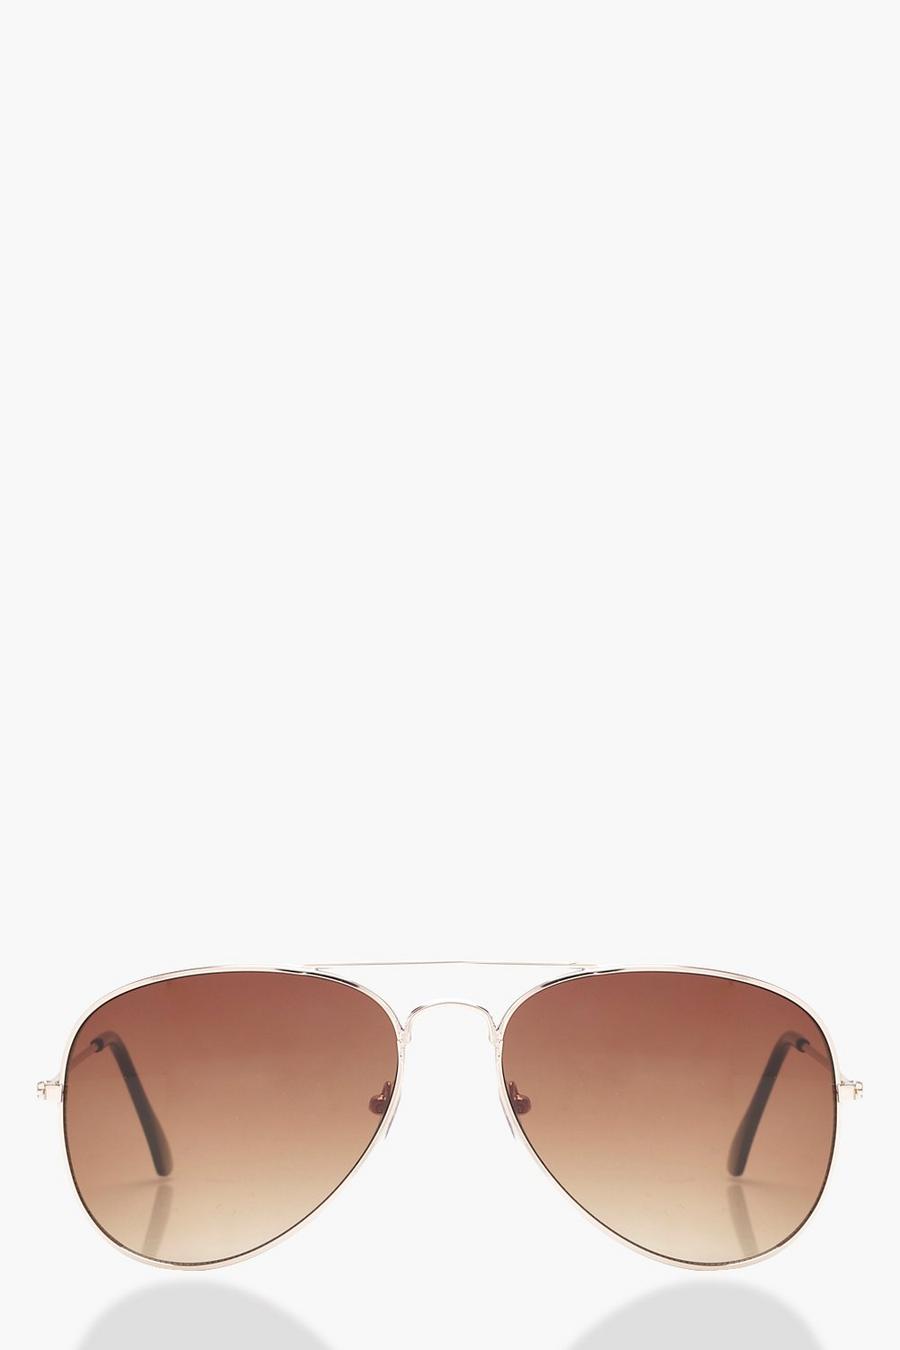 Giorgio Brown Lens Sunglasses